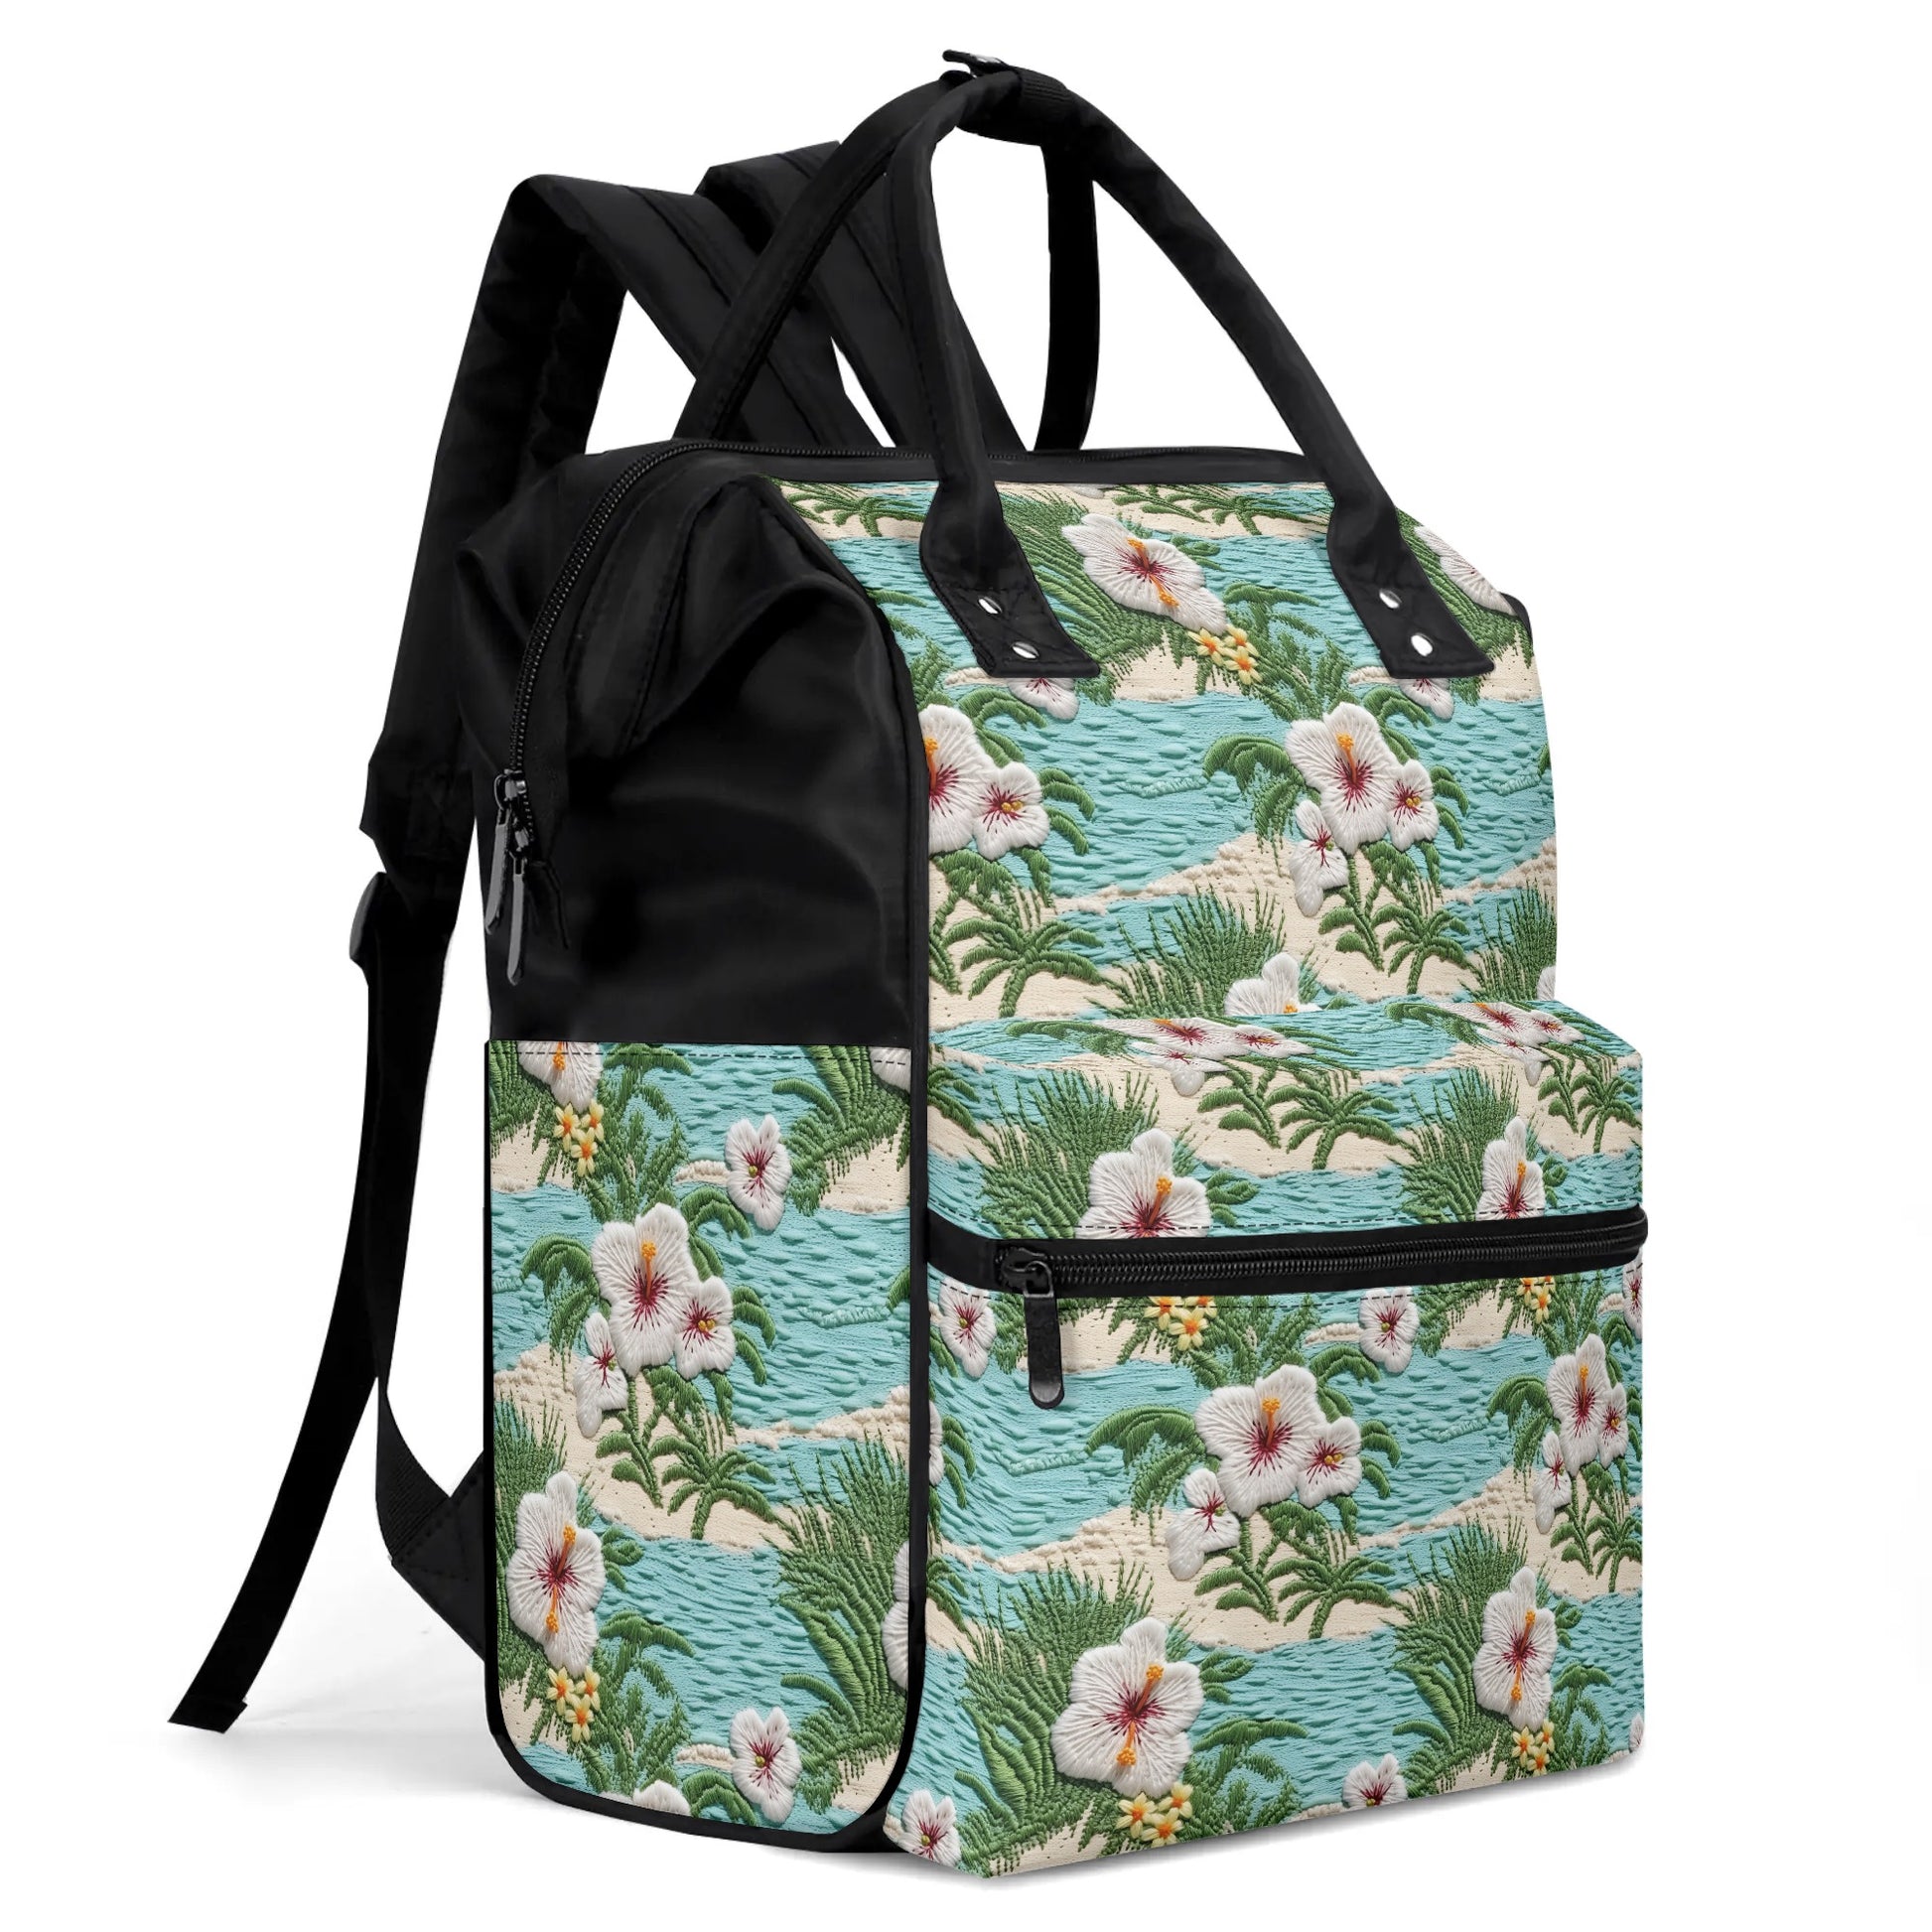 Large Capacity Diaper Bag Mummy Backpack Nursing Bag